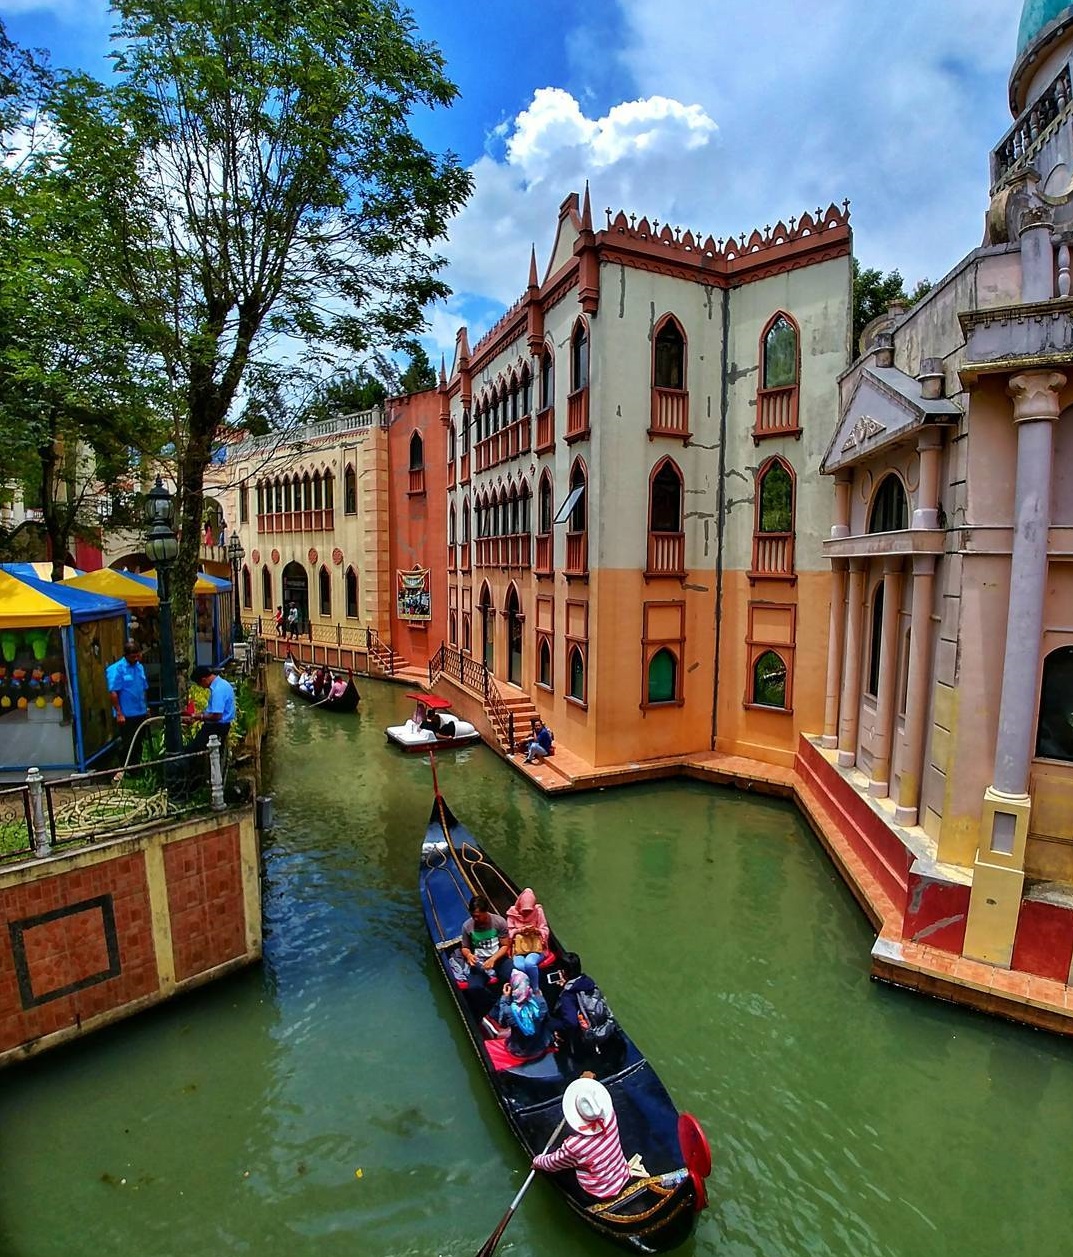 Harga Tiket Masuk Little Venice Kota Bunga April 2021